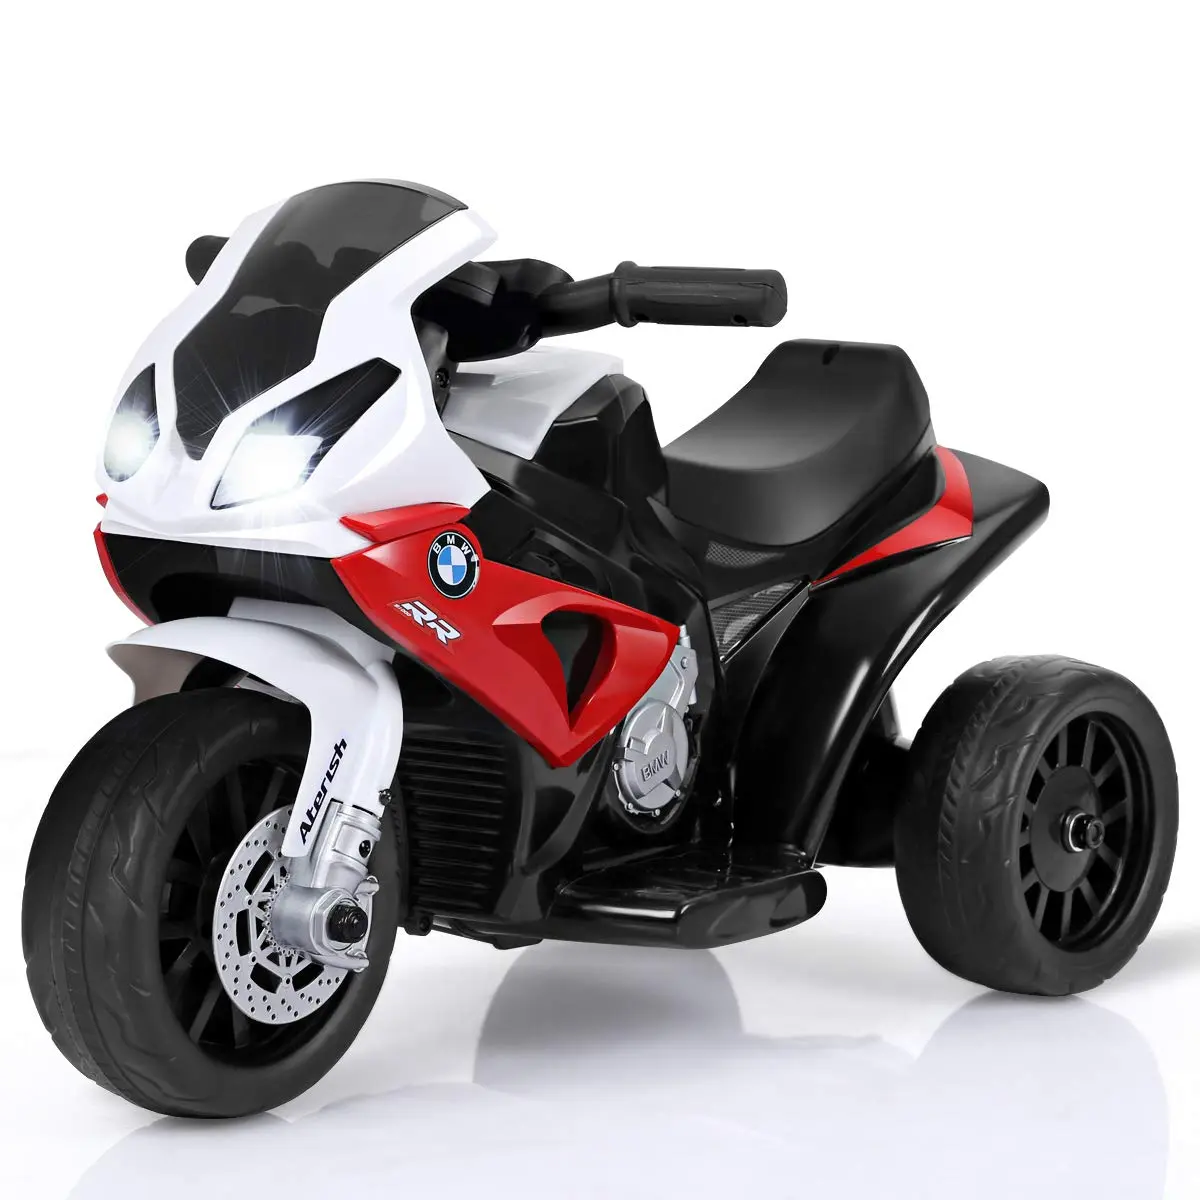 motos electricas para niños - Cuánto dura la carga de una moto eléctrica de niño